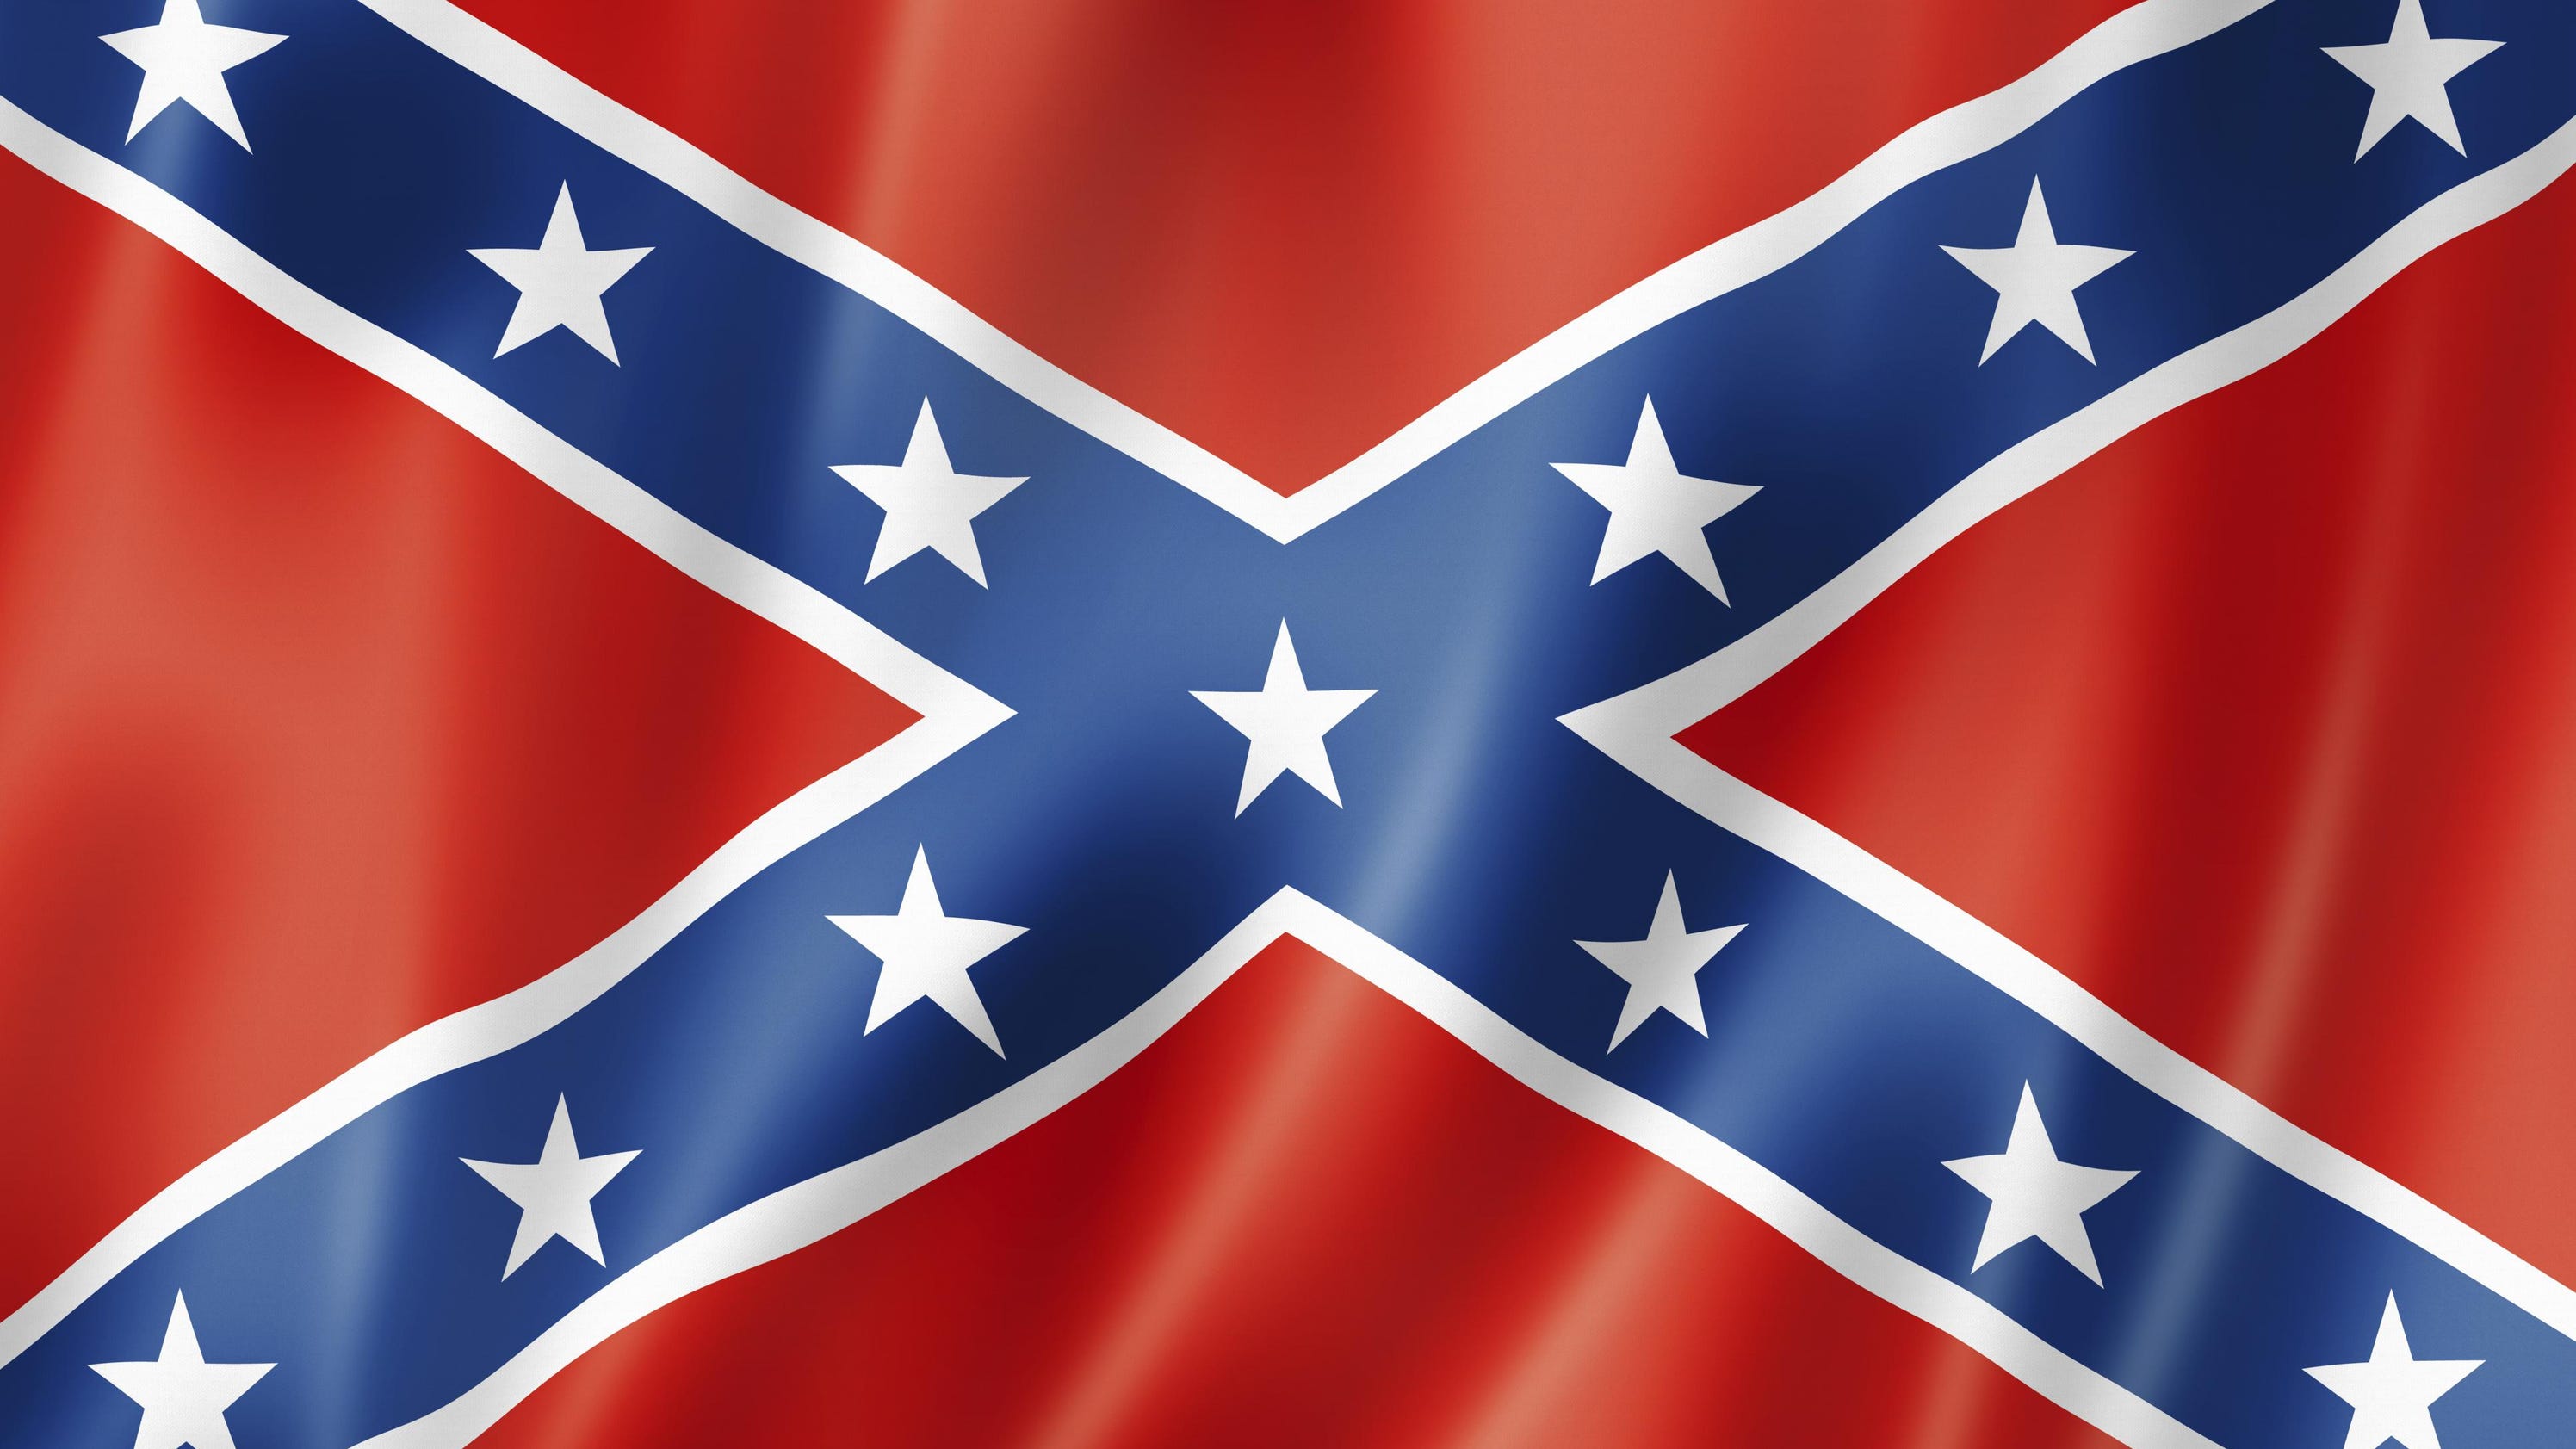 Confederate Flag Waving At Trump Rally Disturbing